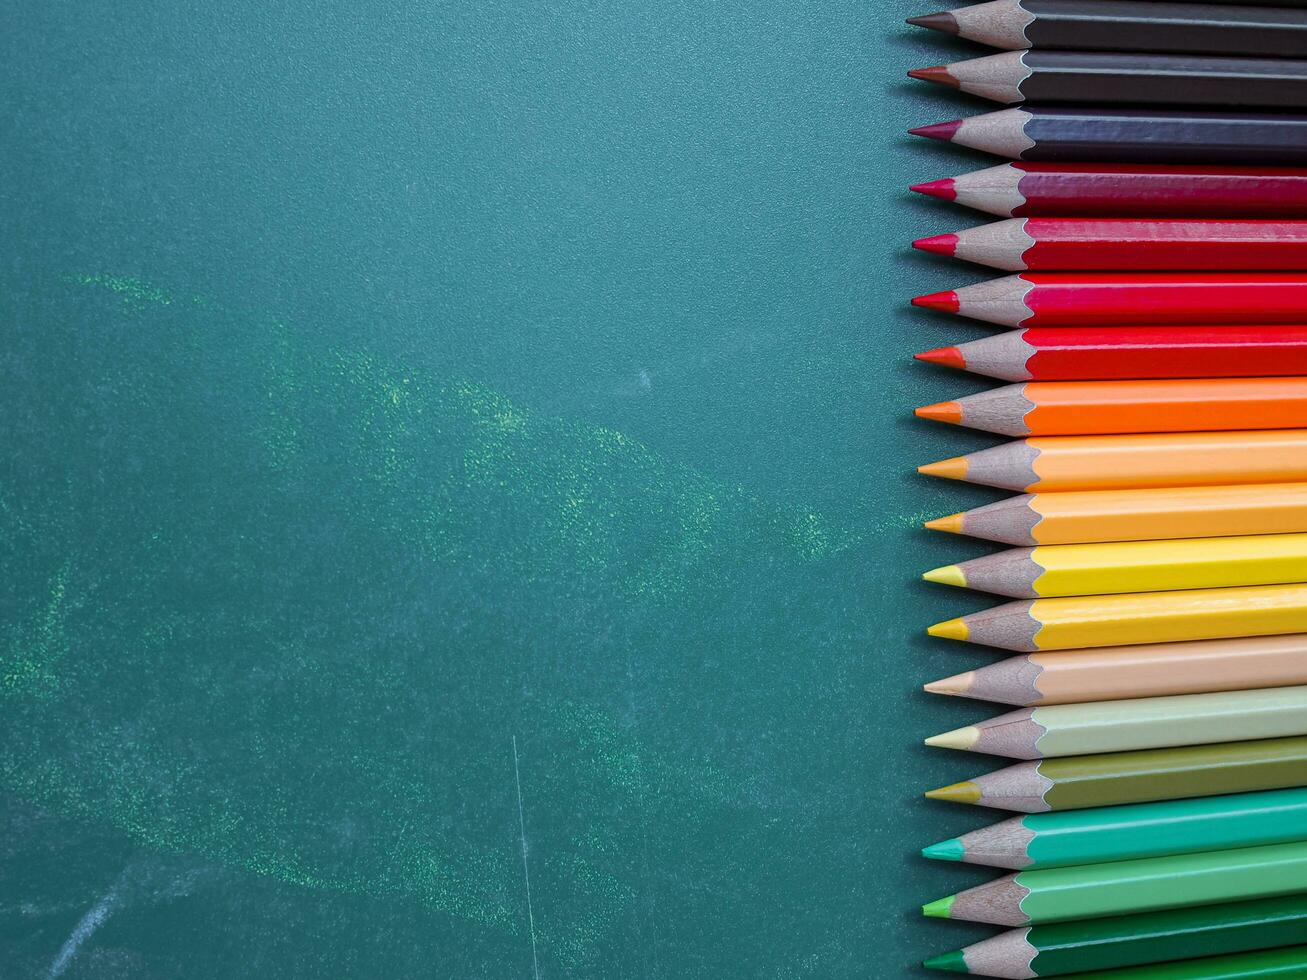 kleur potloden Aan schoolbord achtergrond foto